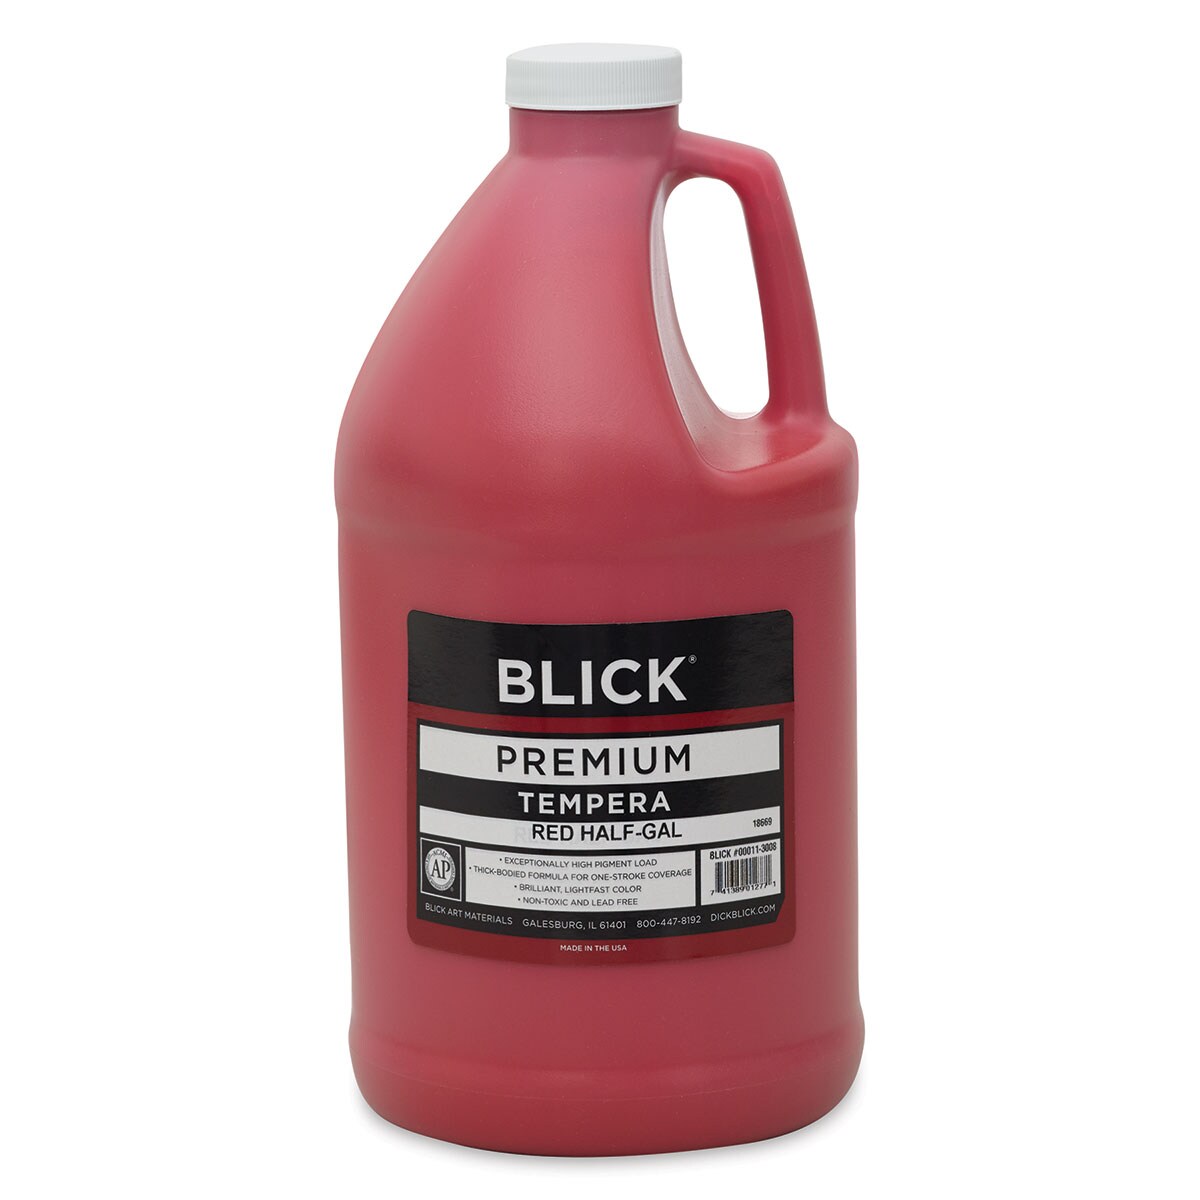 Blick Premium Grade Tempera - Red, Half Gallon